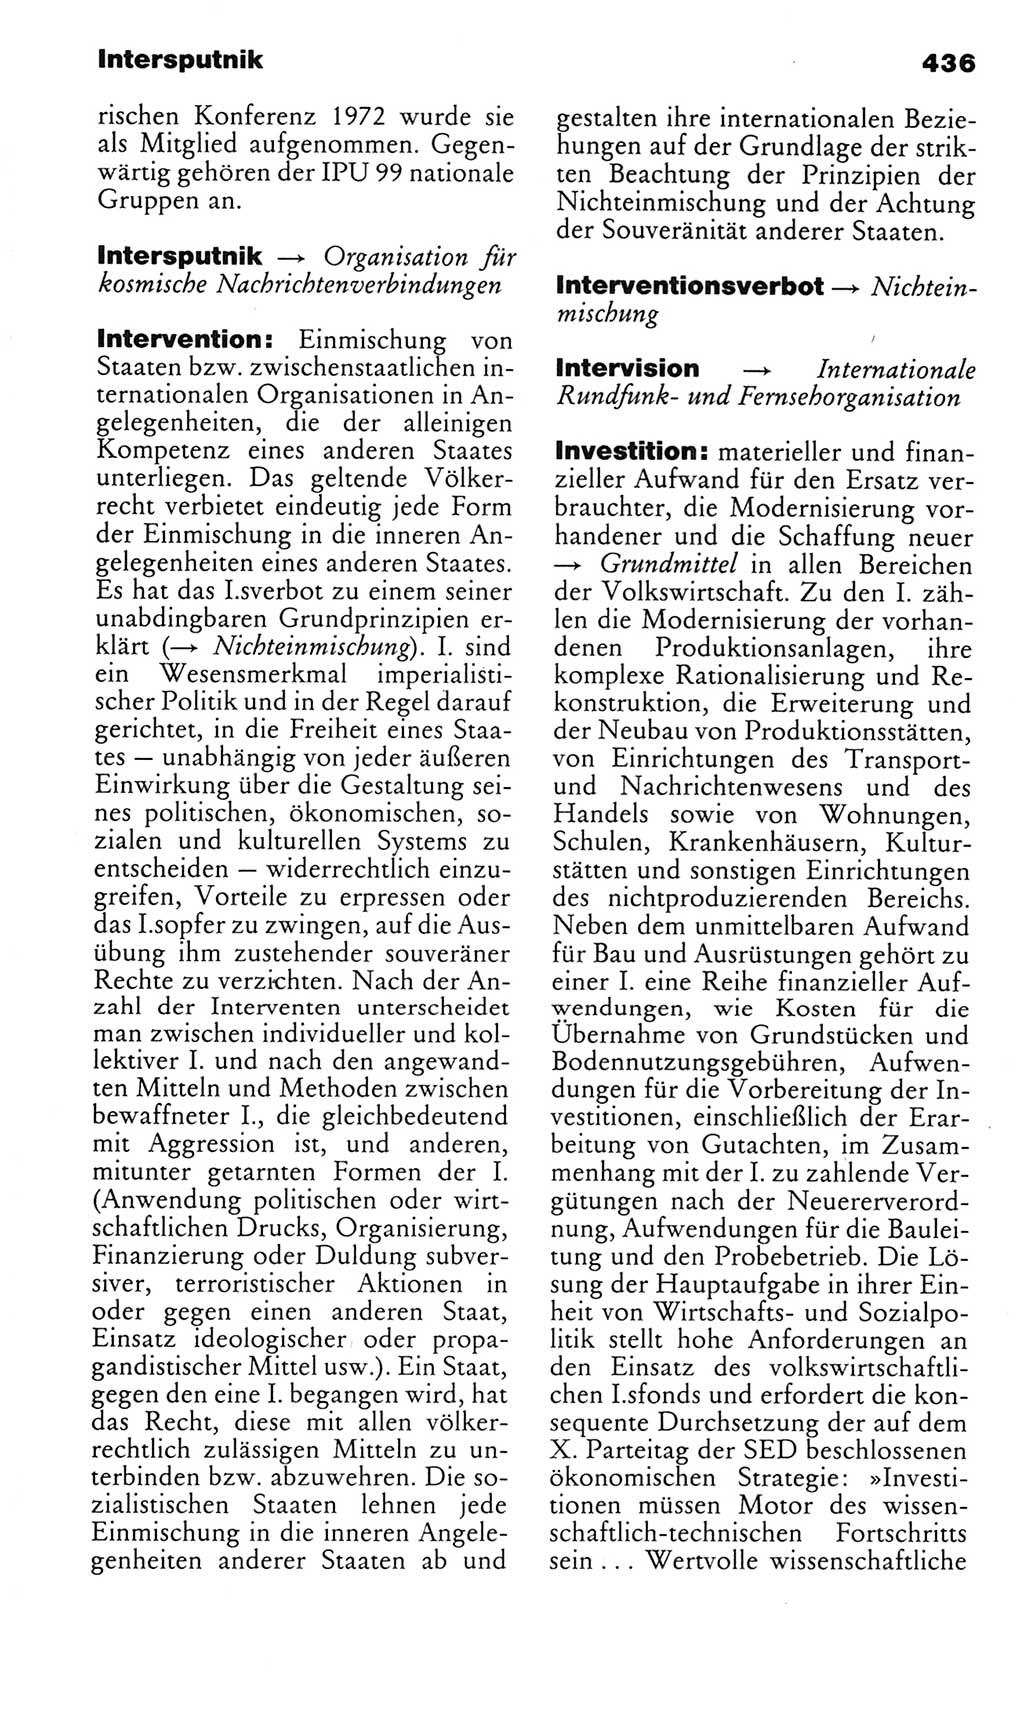 Kleines politisches Wörterbuch [Deutsche Demokratische Republik (DDR)] 1983, Seite 436 (Kl. pol. Wb. DDR 1983, S. 436)